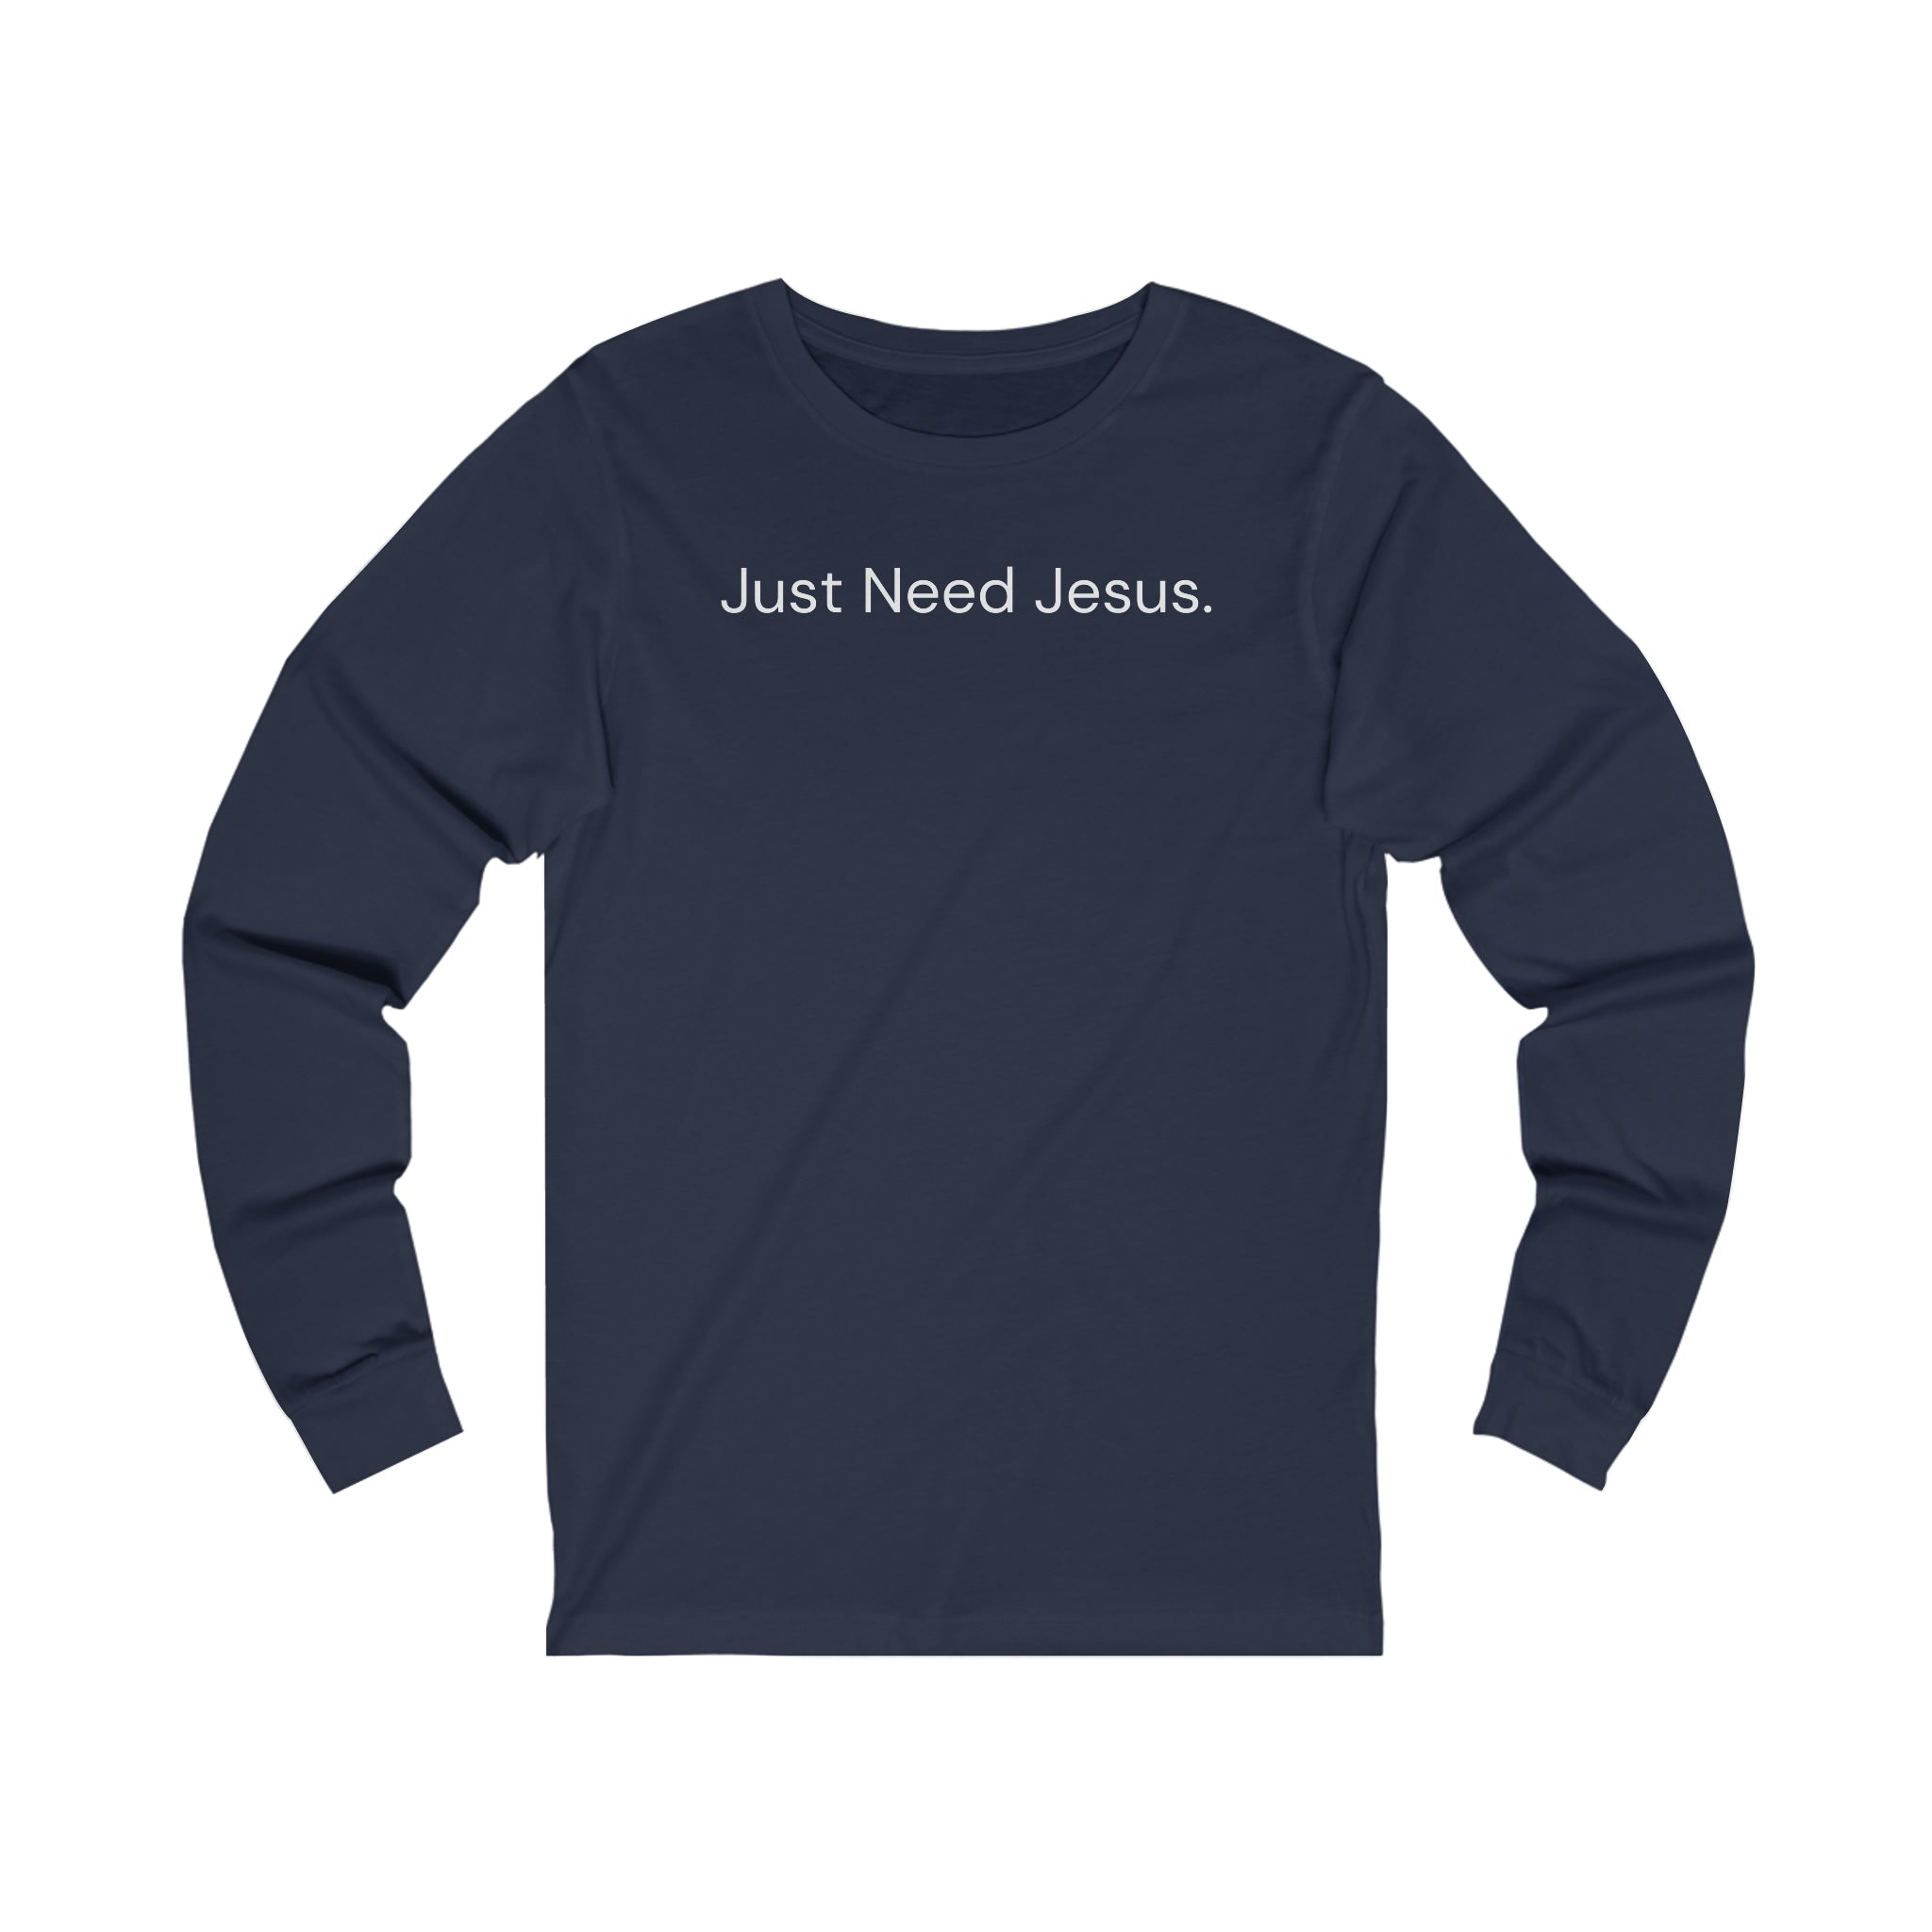 Just Need Jesus. Long Sleeve Tee (Unisex)